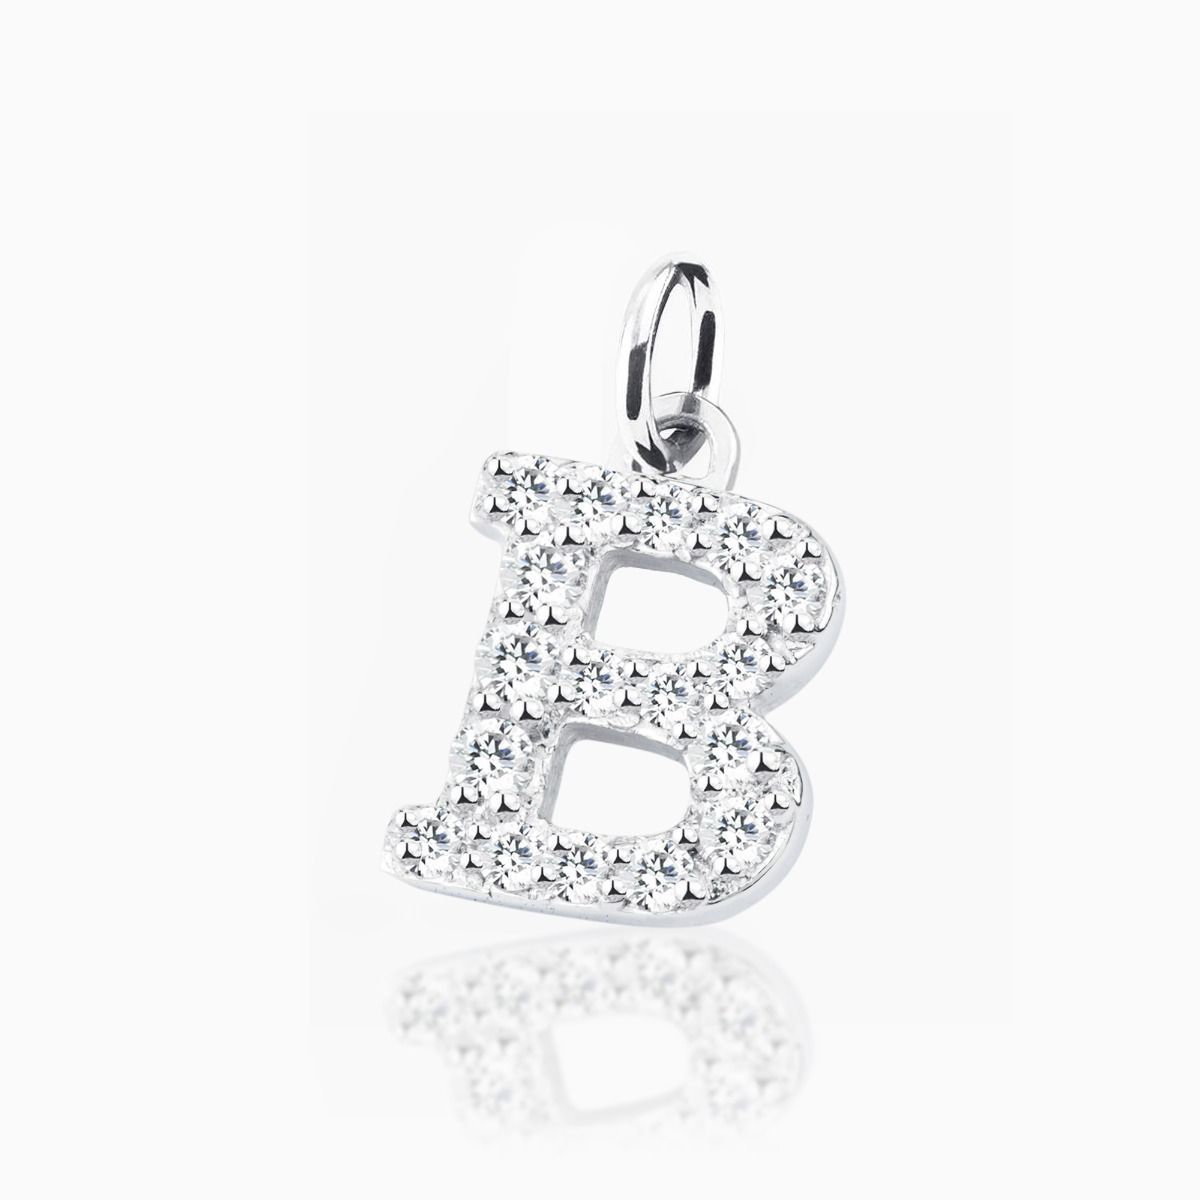 Pulsera de cadena de oro blanco con chatones de diamantes con charm inicial B de diamantes